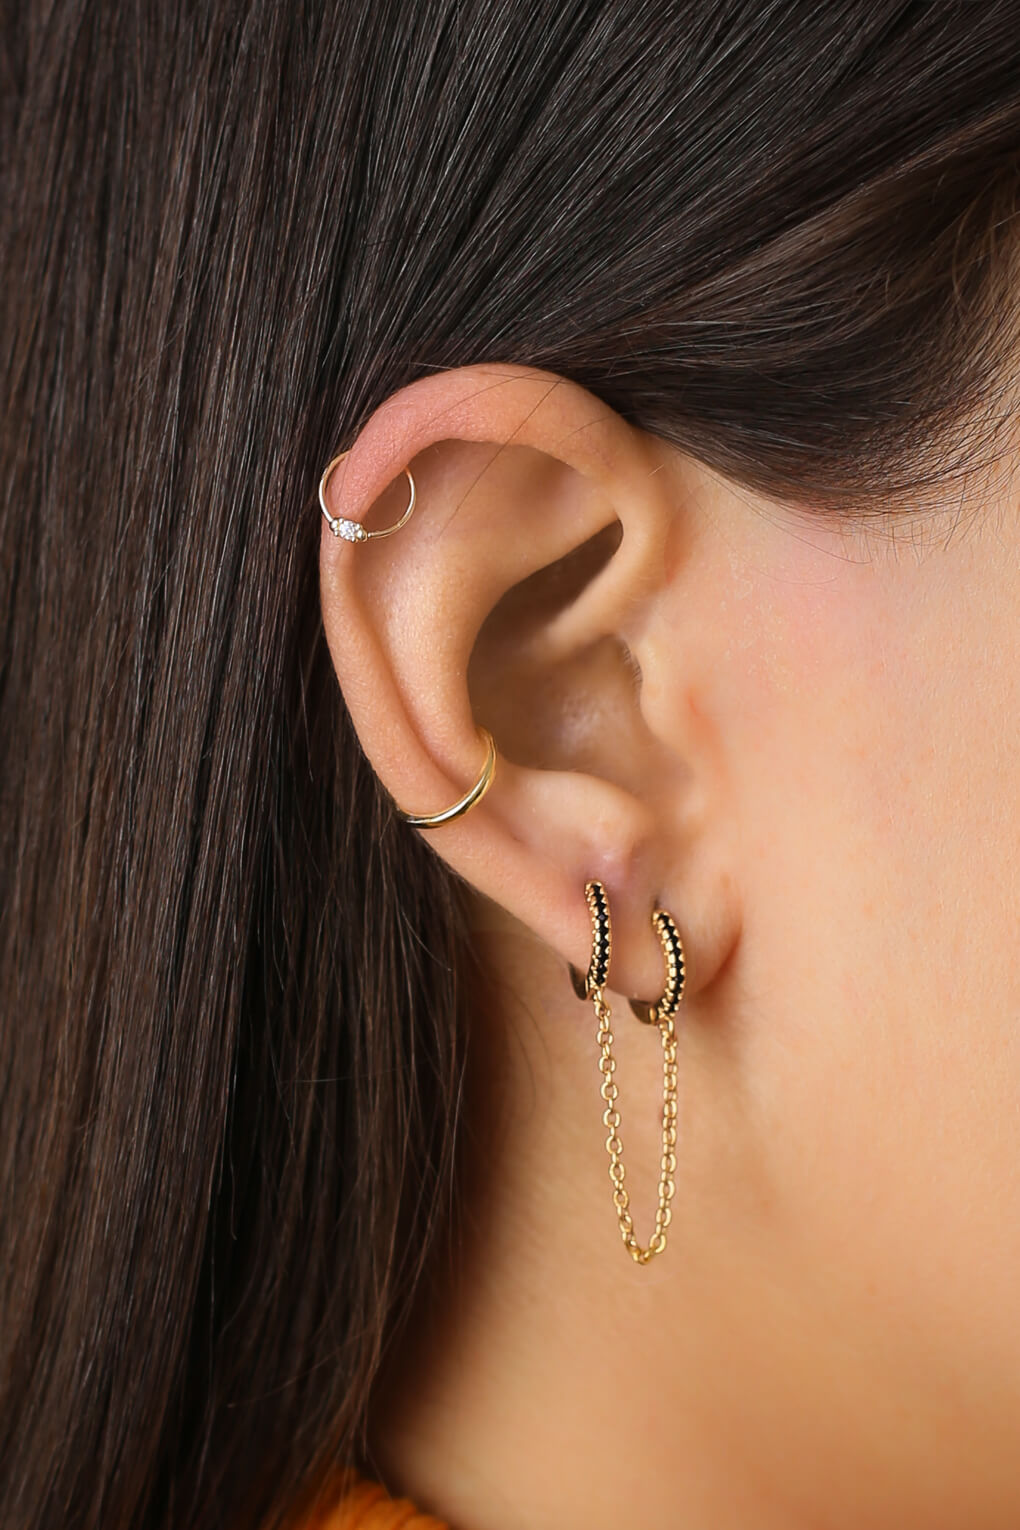 14K gold piercing earring